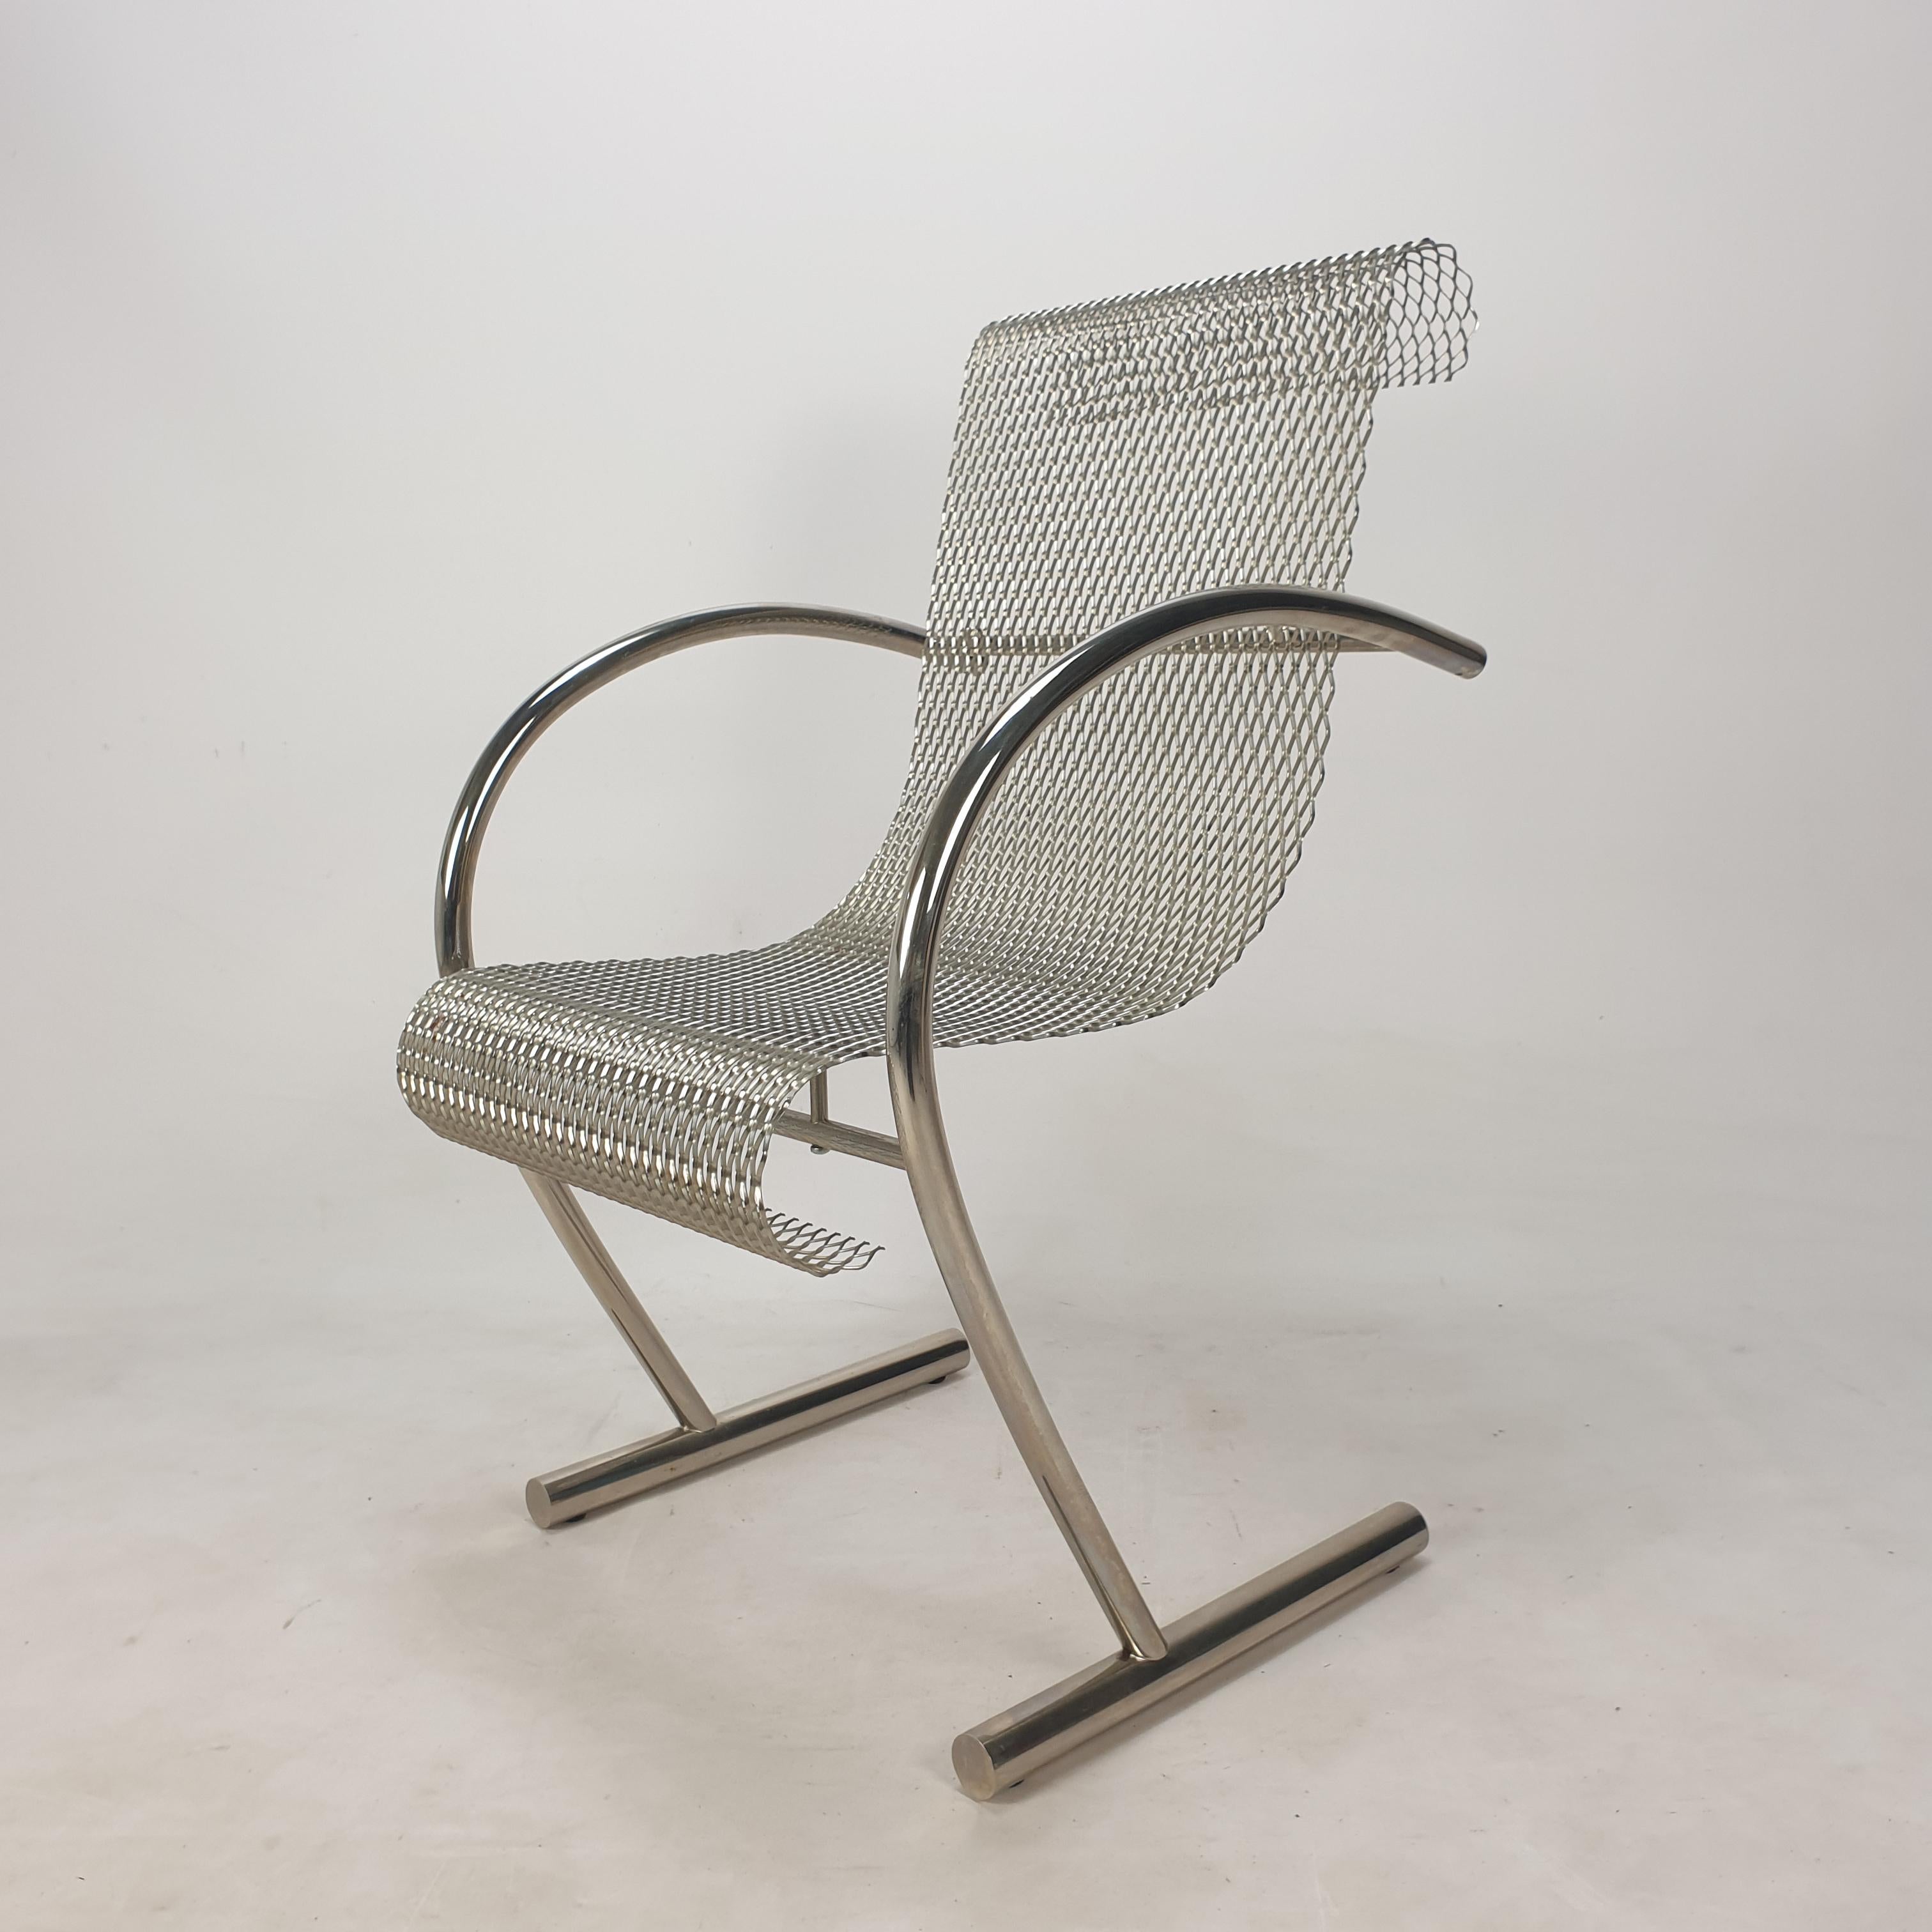 Magnifique chaise Sing Sing Sing, conçue par Shiro Kuramata et fabriquée par XO, 1985.

La chaise est fabriquée en acier tubulaire et en maille d'acier expansé. 
Il est marqué sur une jambe, voir la photo.

Shiro Kuramata (1931-1991) a créé un